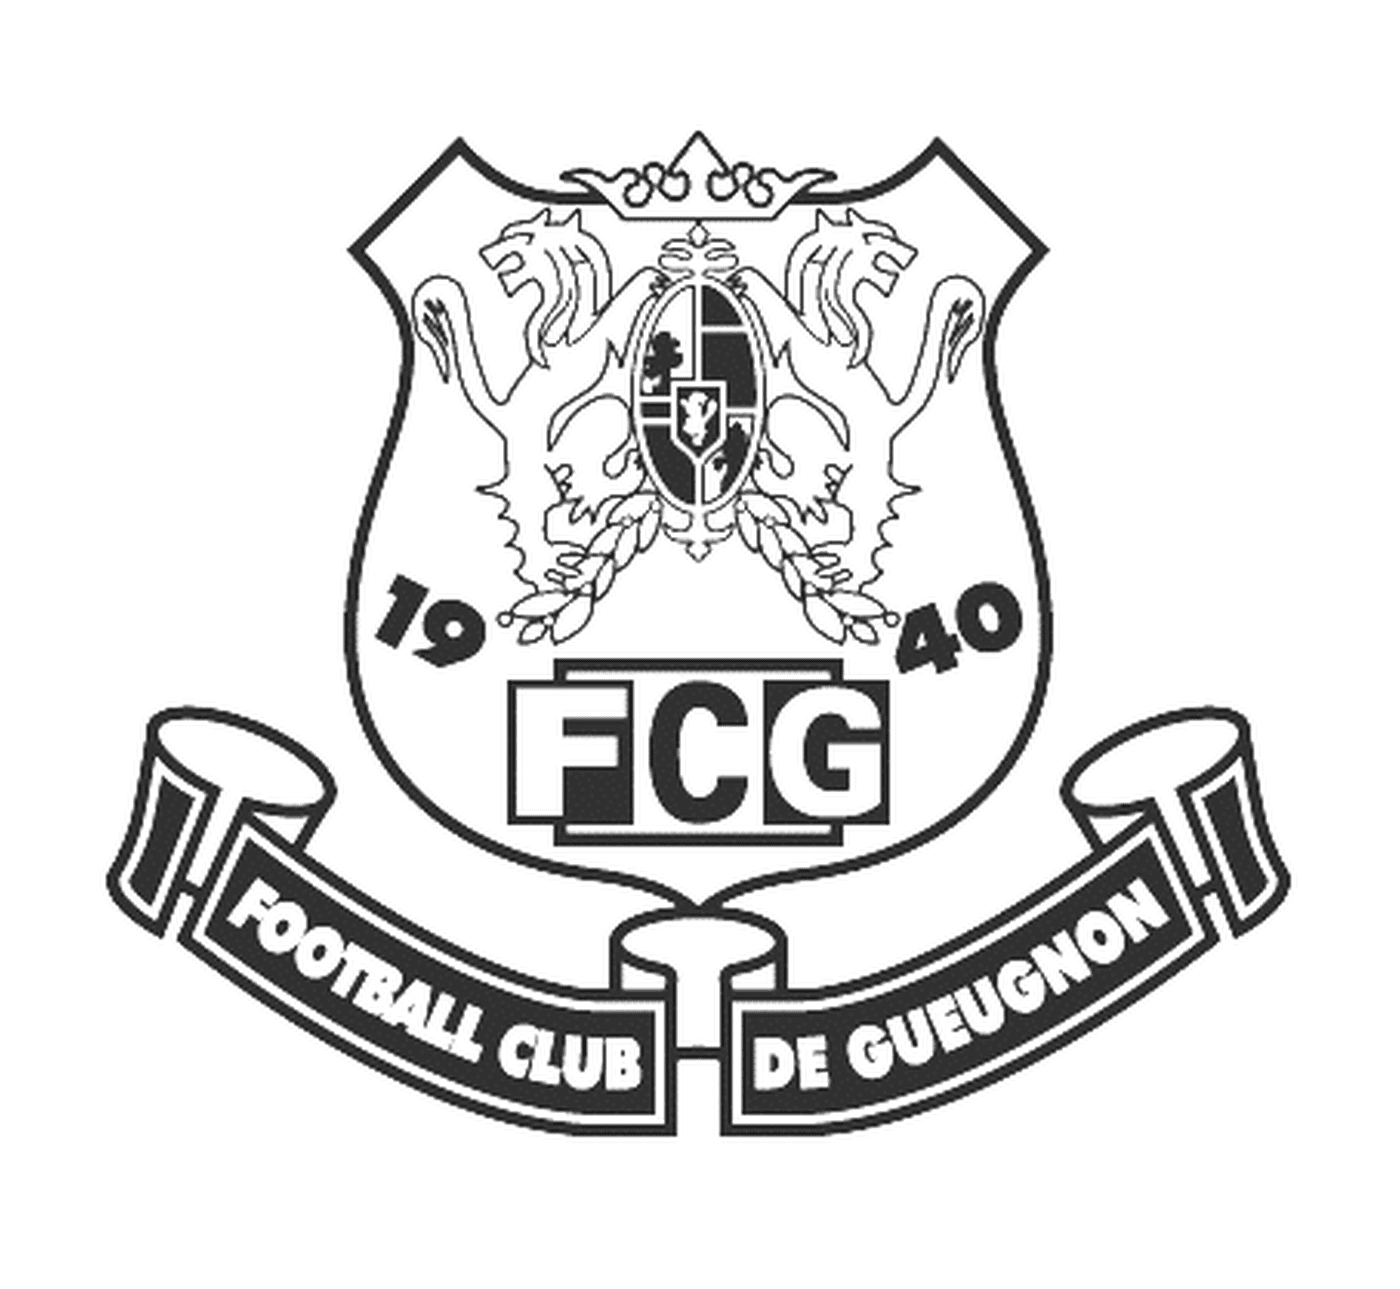  Logotipo del Club de Fútbol de Gueugnon 